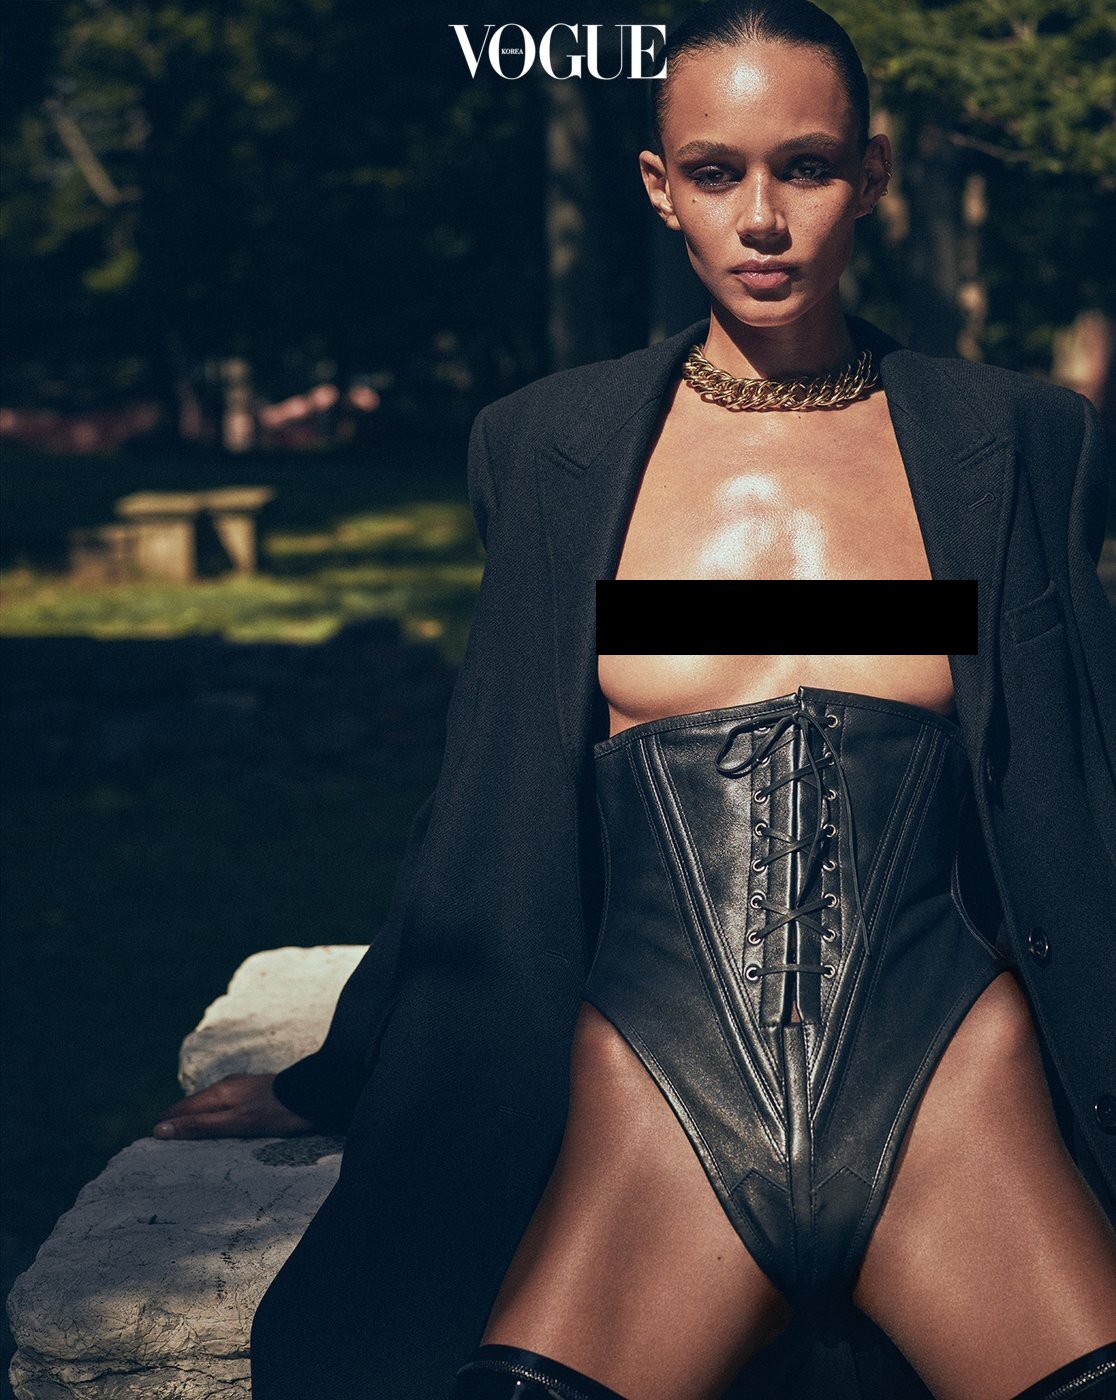 Siêu mẫu nóng bỏng nhất nước Mỹ chụp ngực trần trên Vogue - Hình 4